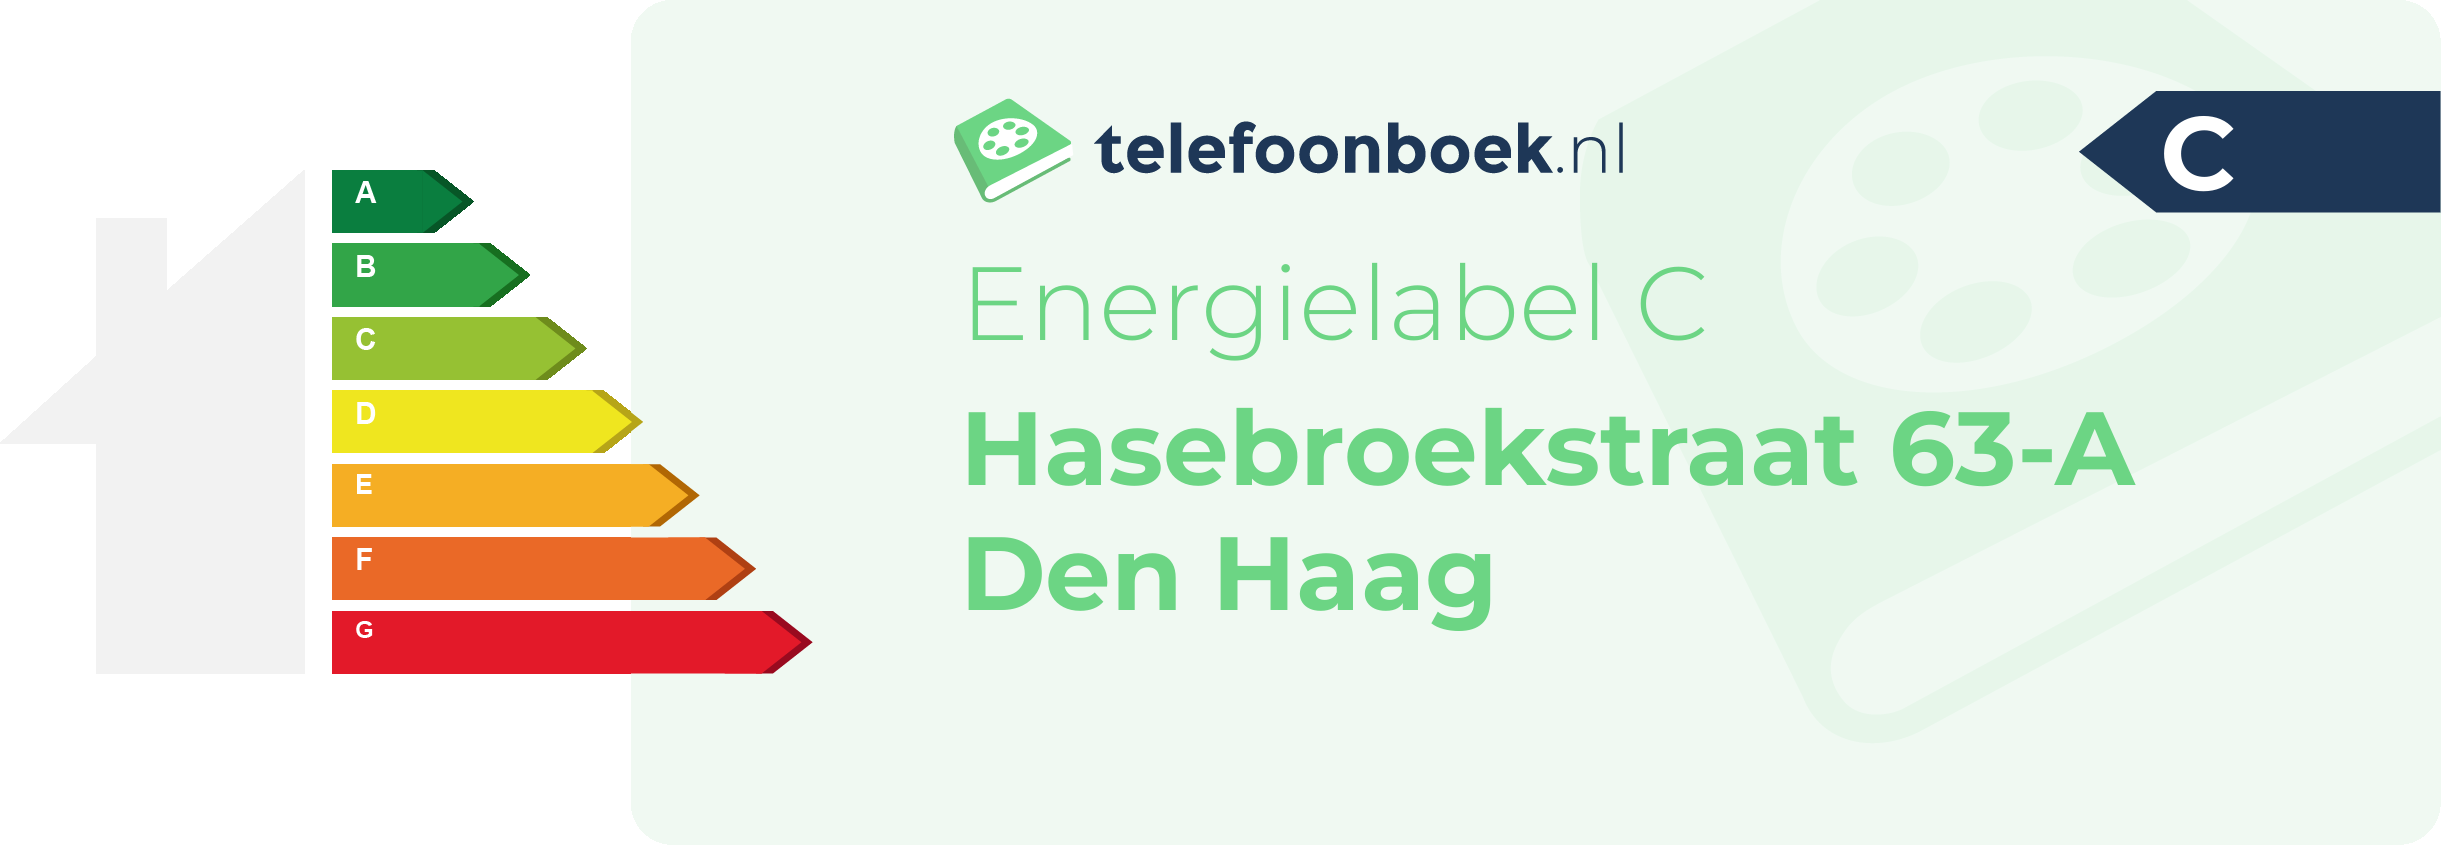 Energielabel Hasebroekstraat 63-A Den Haag